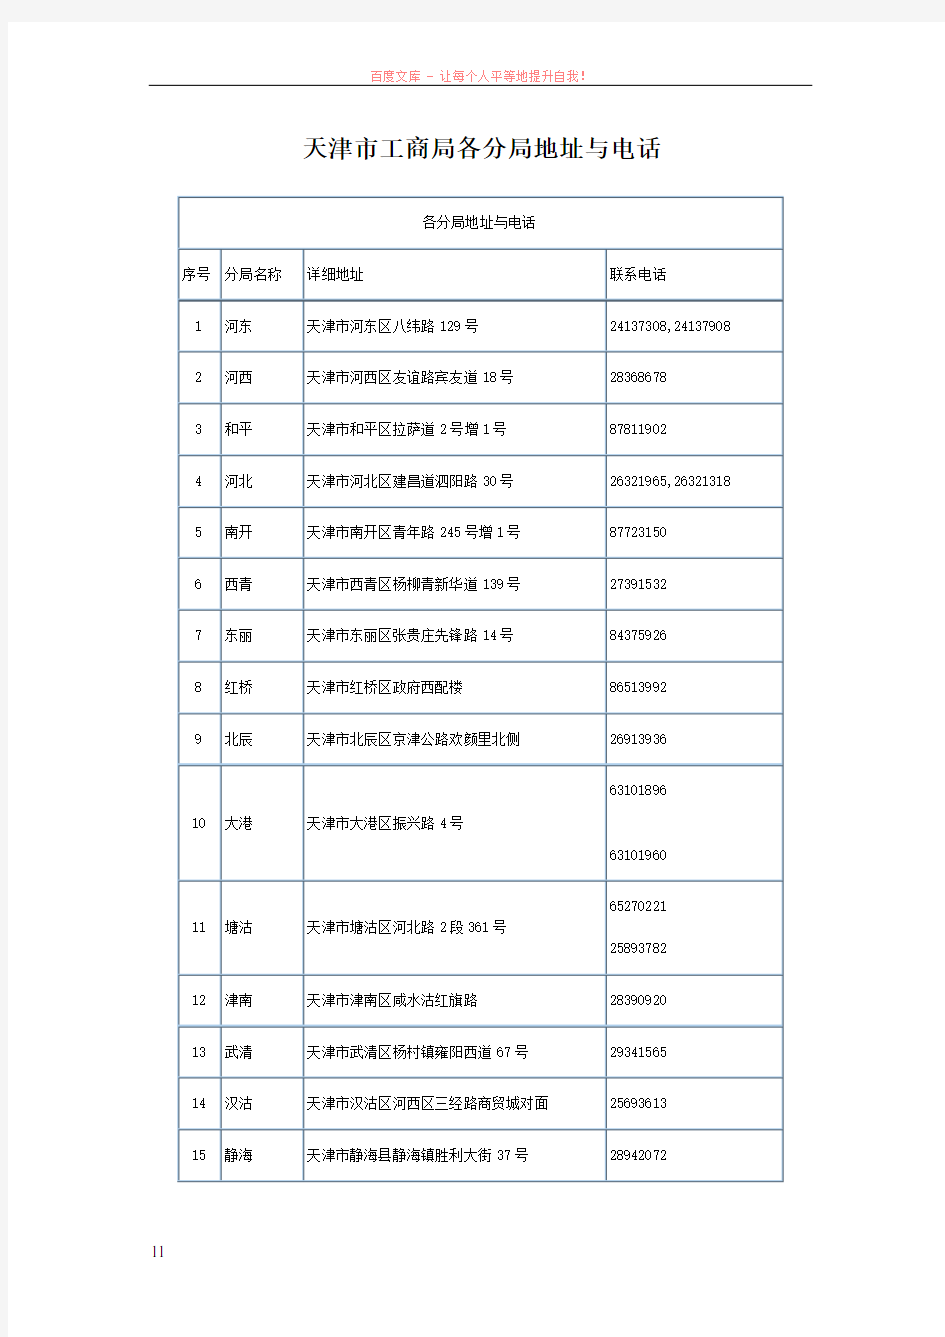 天津市工商局地址及联系方式